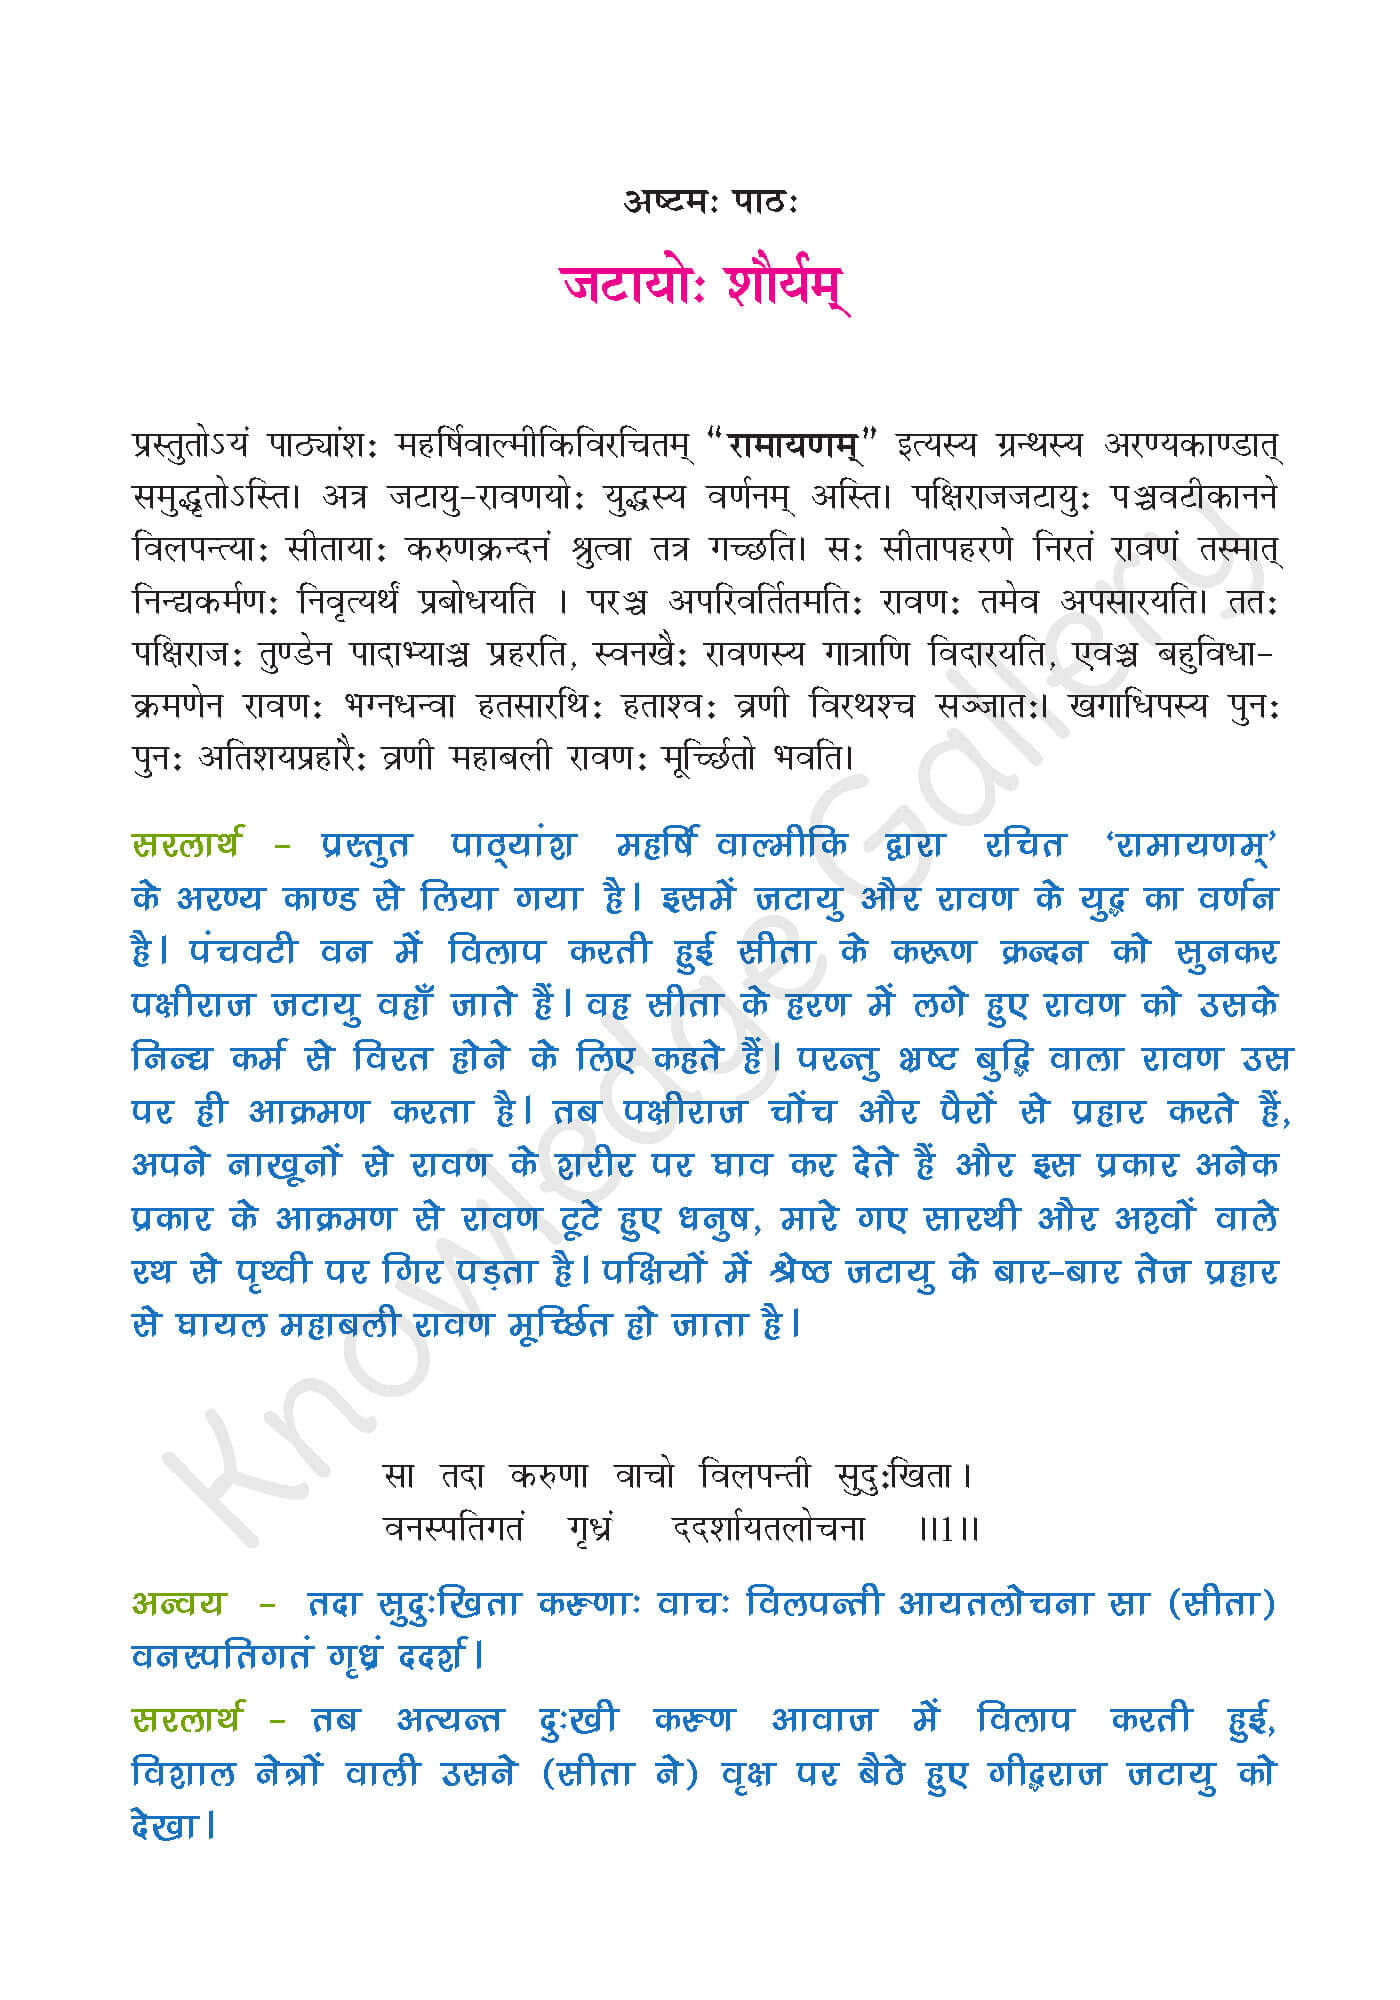 NCERT Solution For Class 9 Sanskrit Chapter 8 part 1